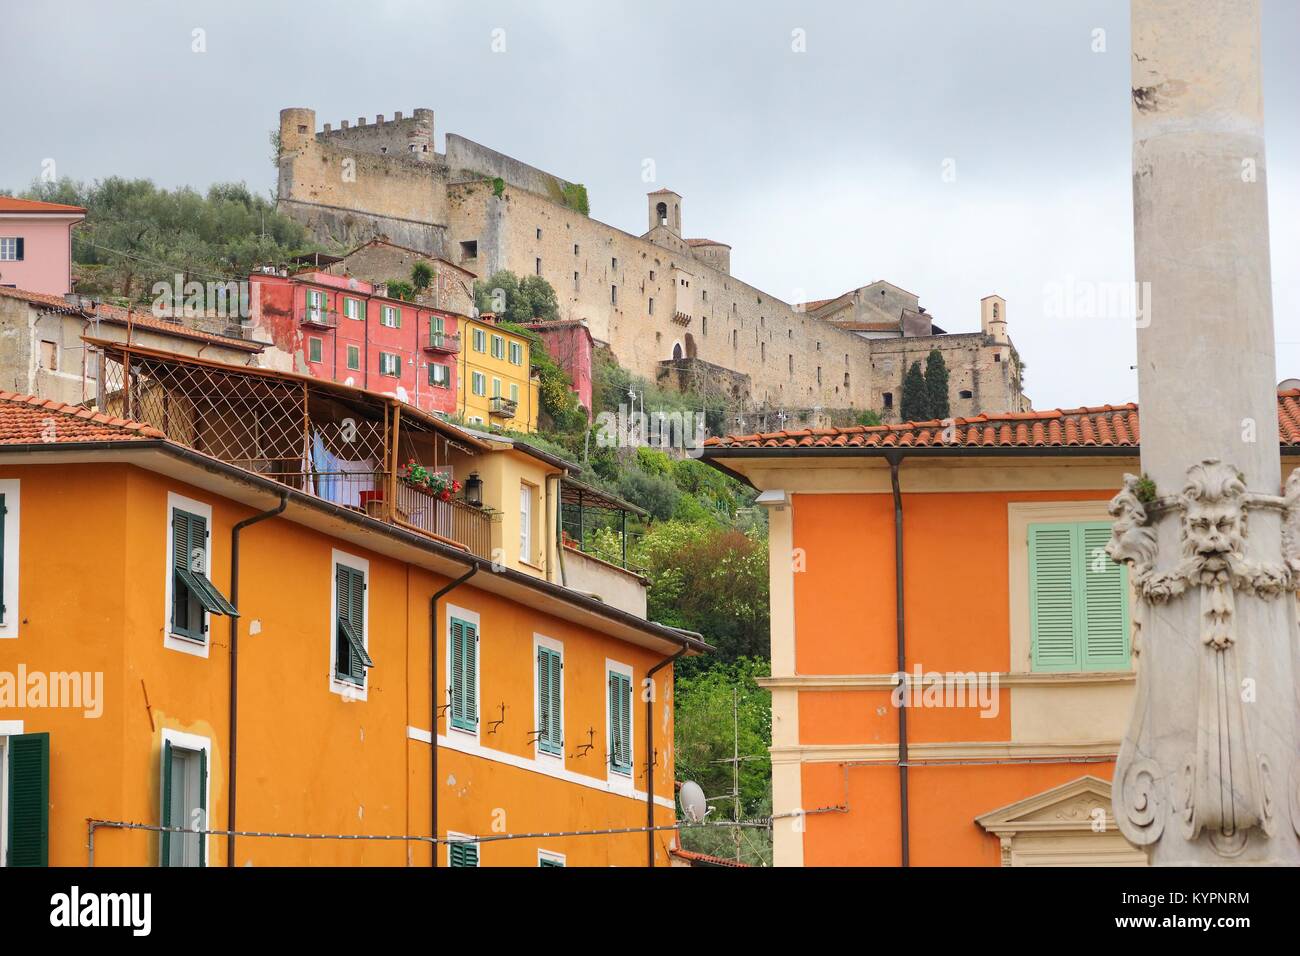 Massa - Stadt in der Toskana, Italien. Malaspina Schloss mit Blick auf die Stadt. Stockfoto